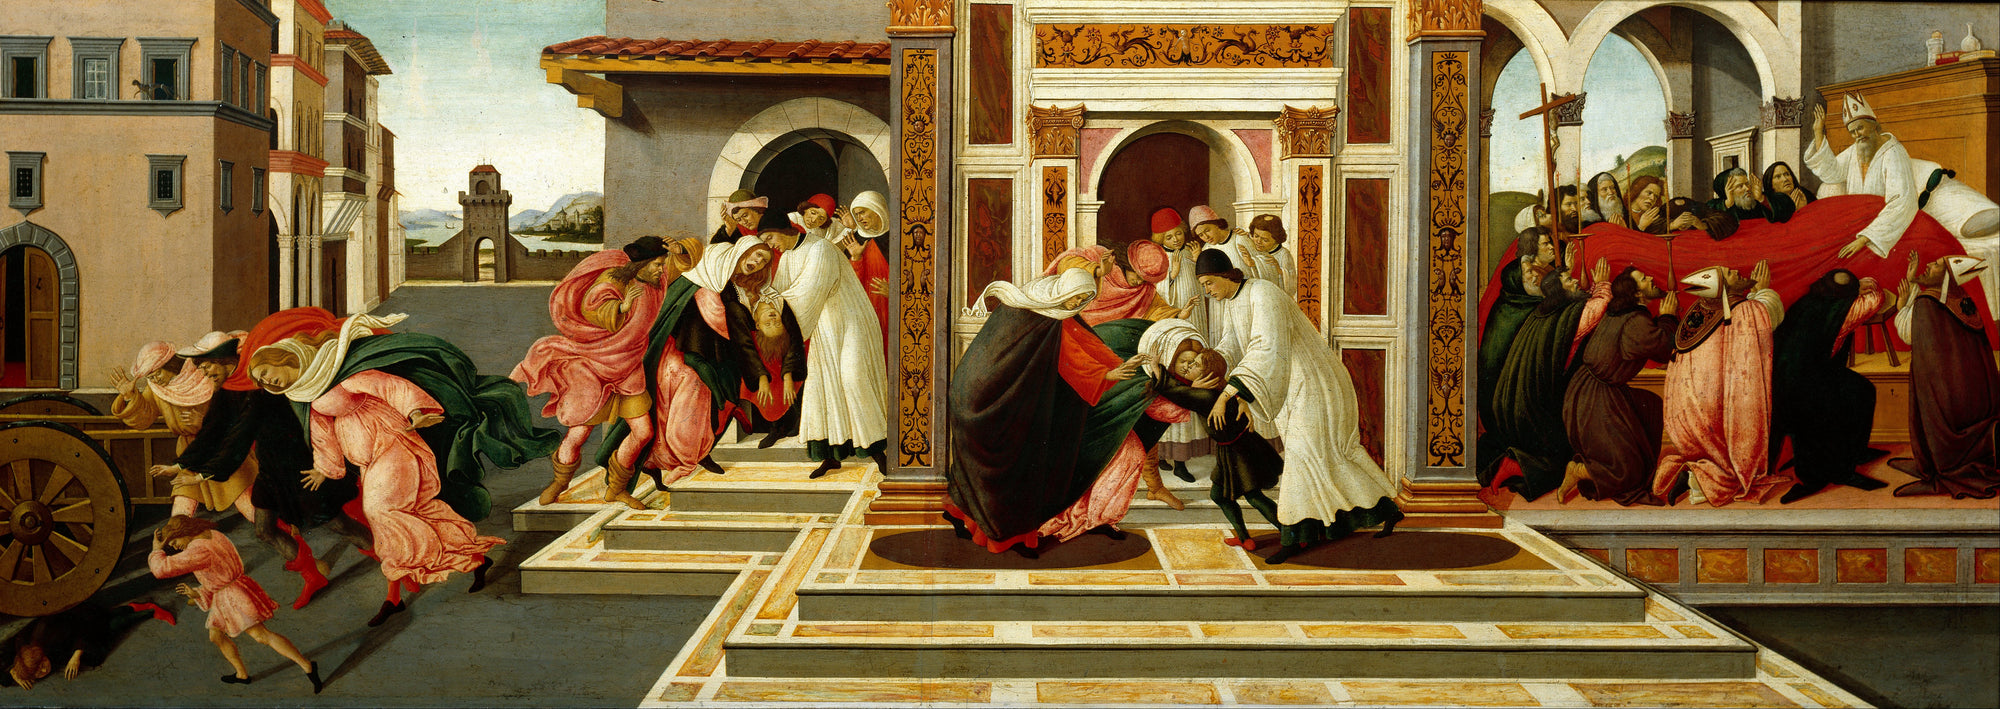 Dernier miracle et mort de saint Zénobe - Sandro Botticelli